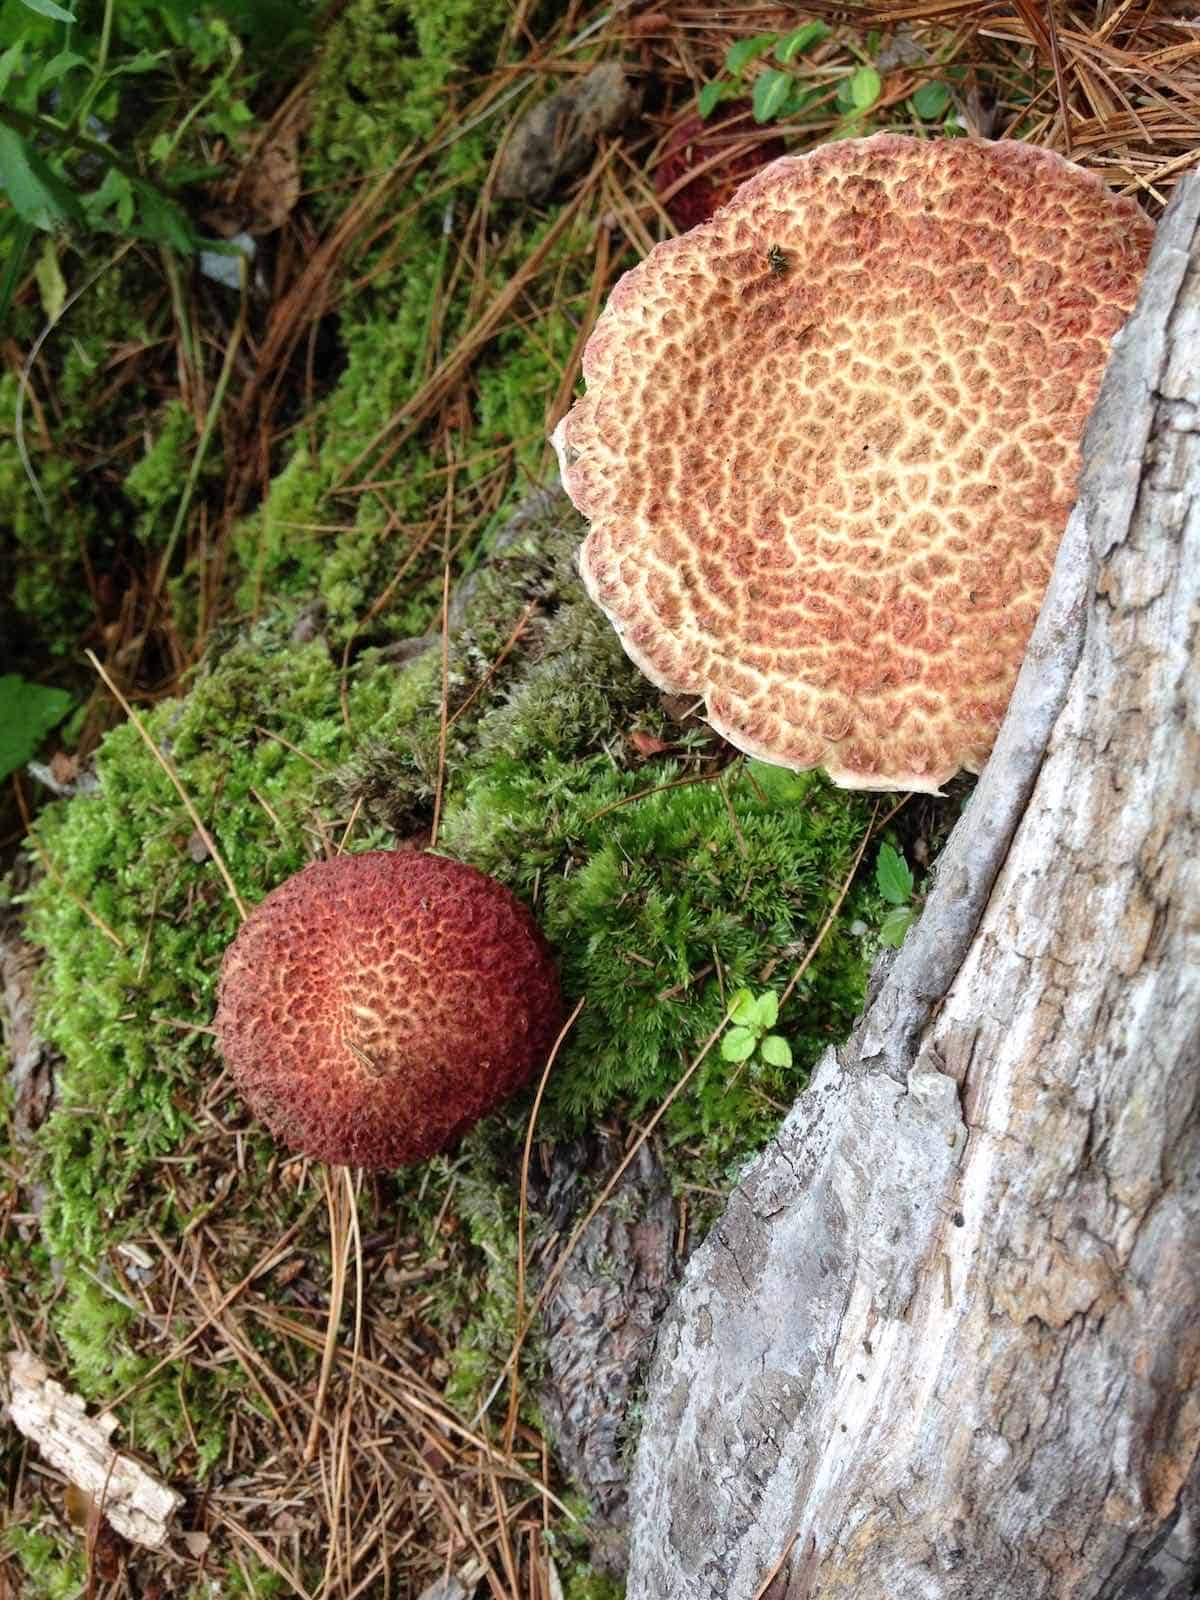 Lake Elise trail showing wild non-edible mushrooms.